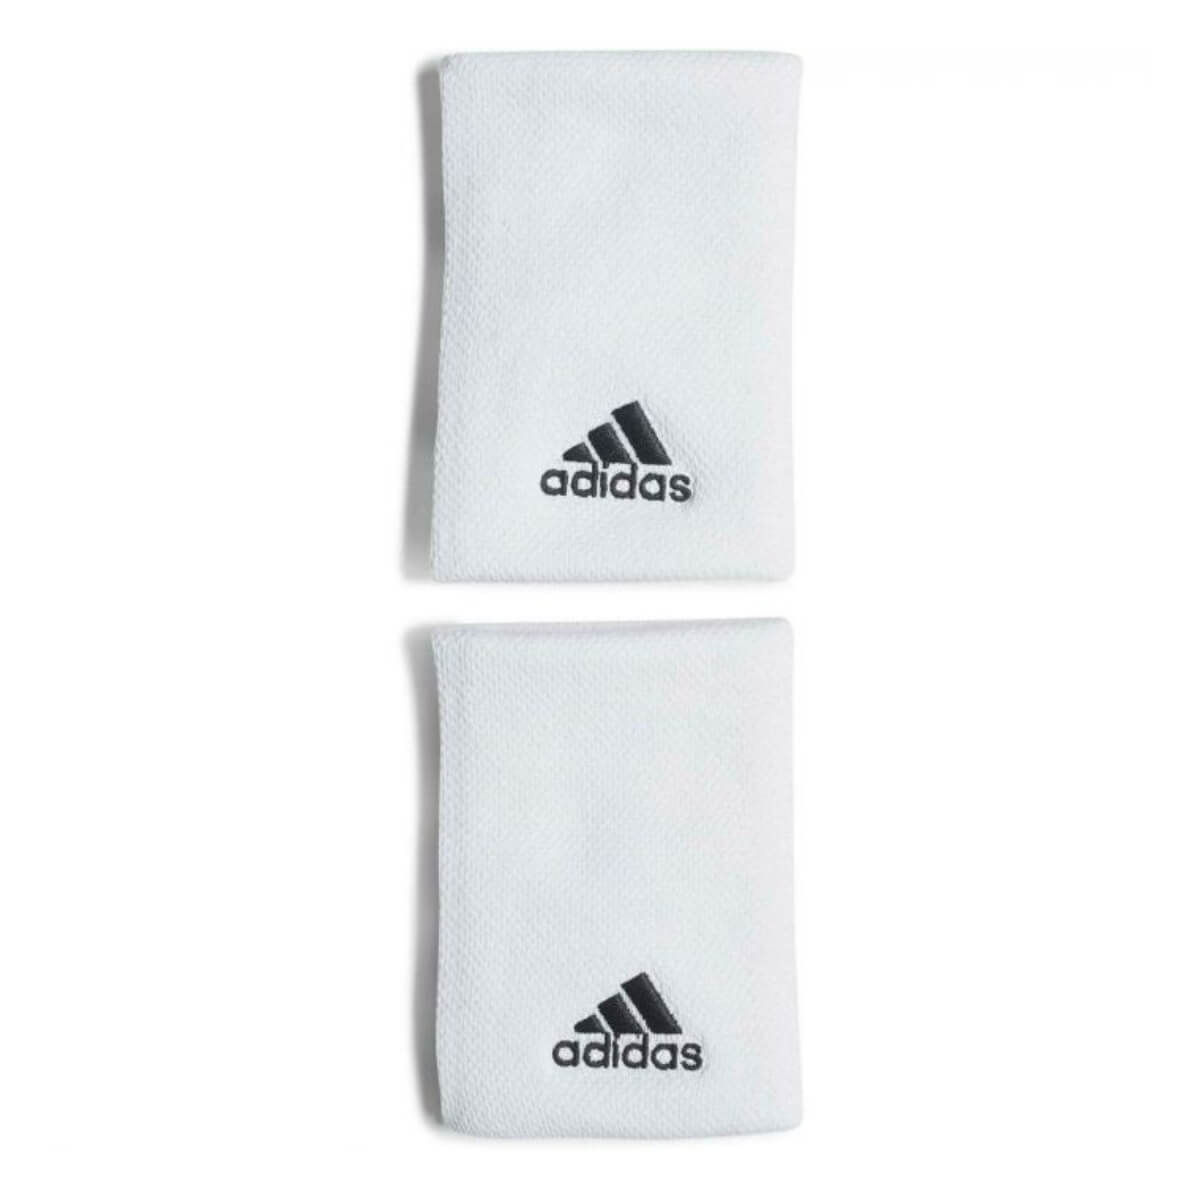 Adidas zweetband wit large